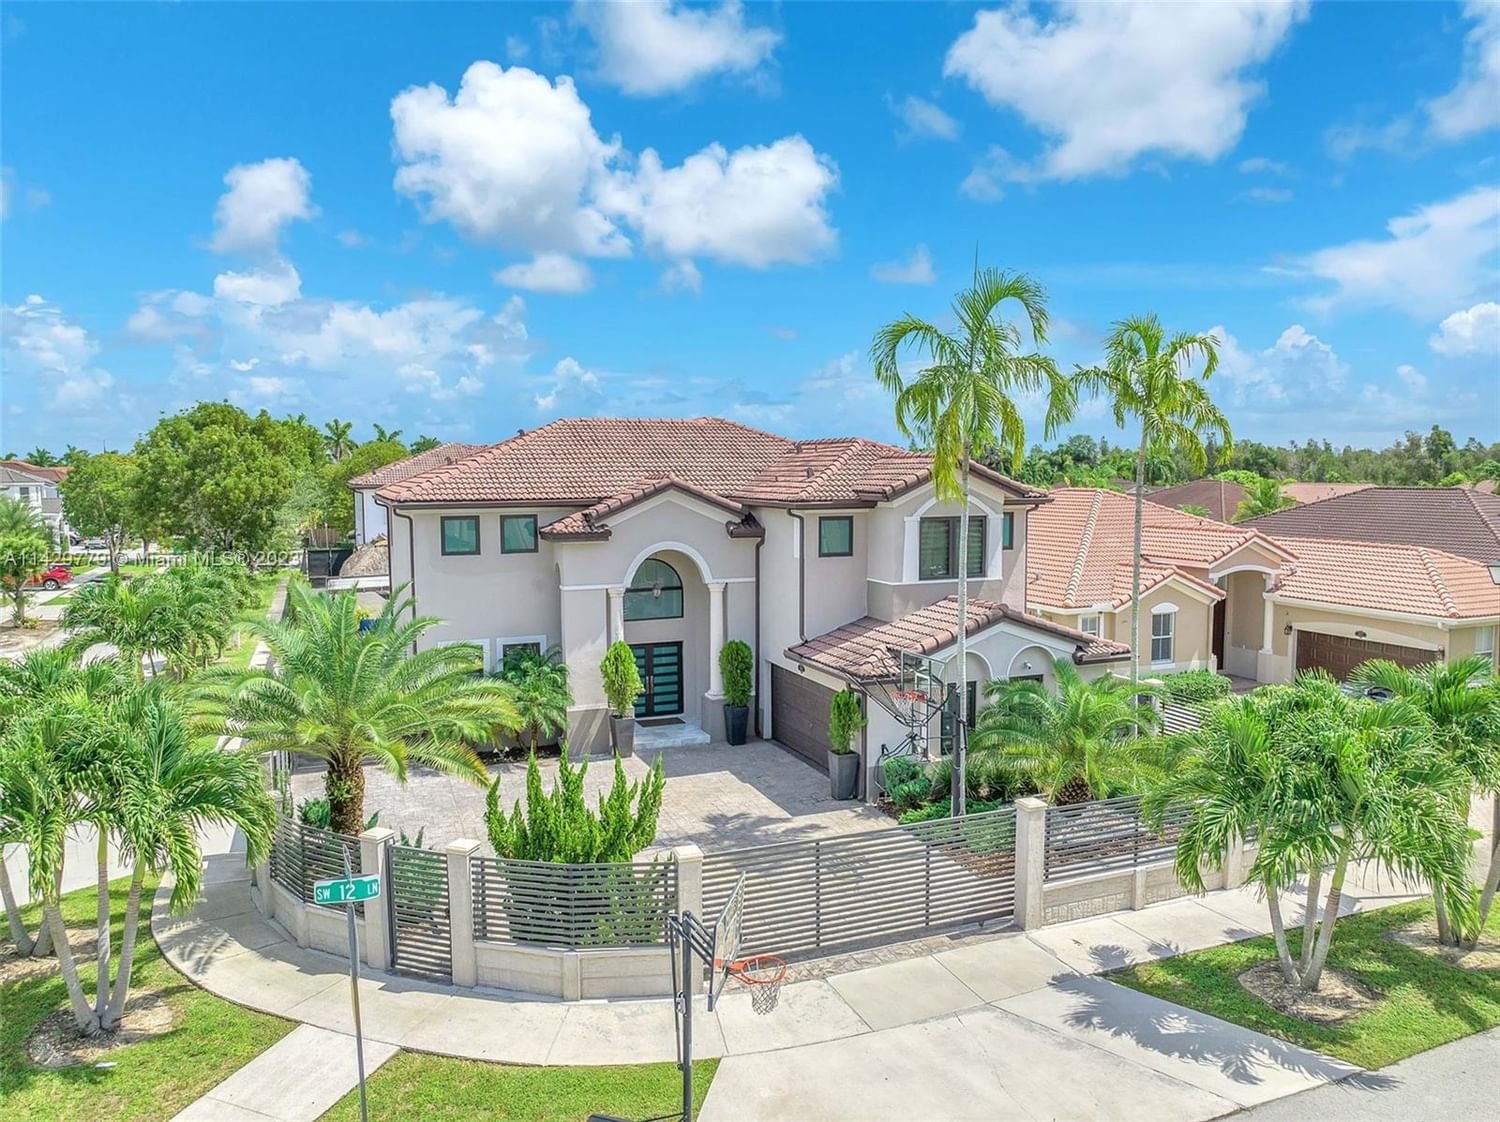 Real estate property located at 14995 12th Ln, Miami-Dade County, Miami, FL